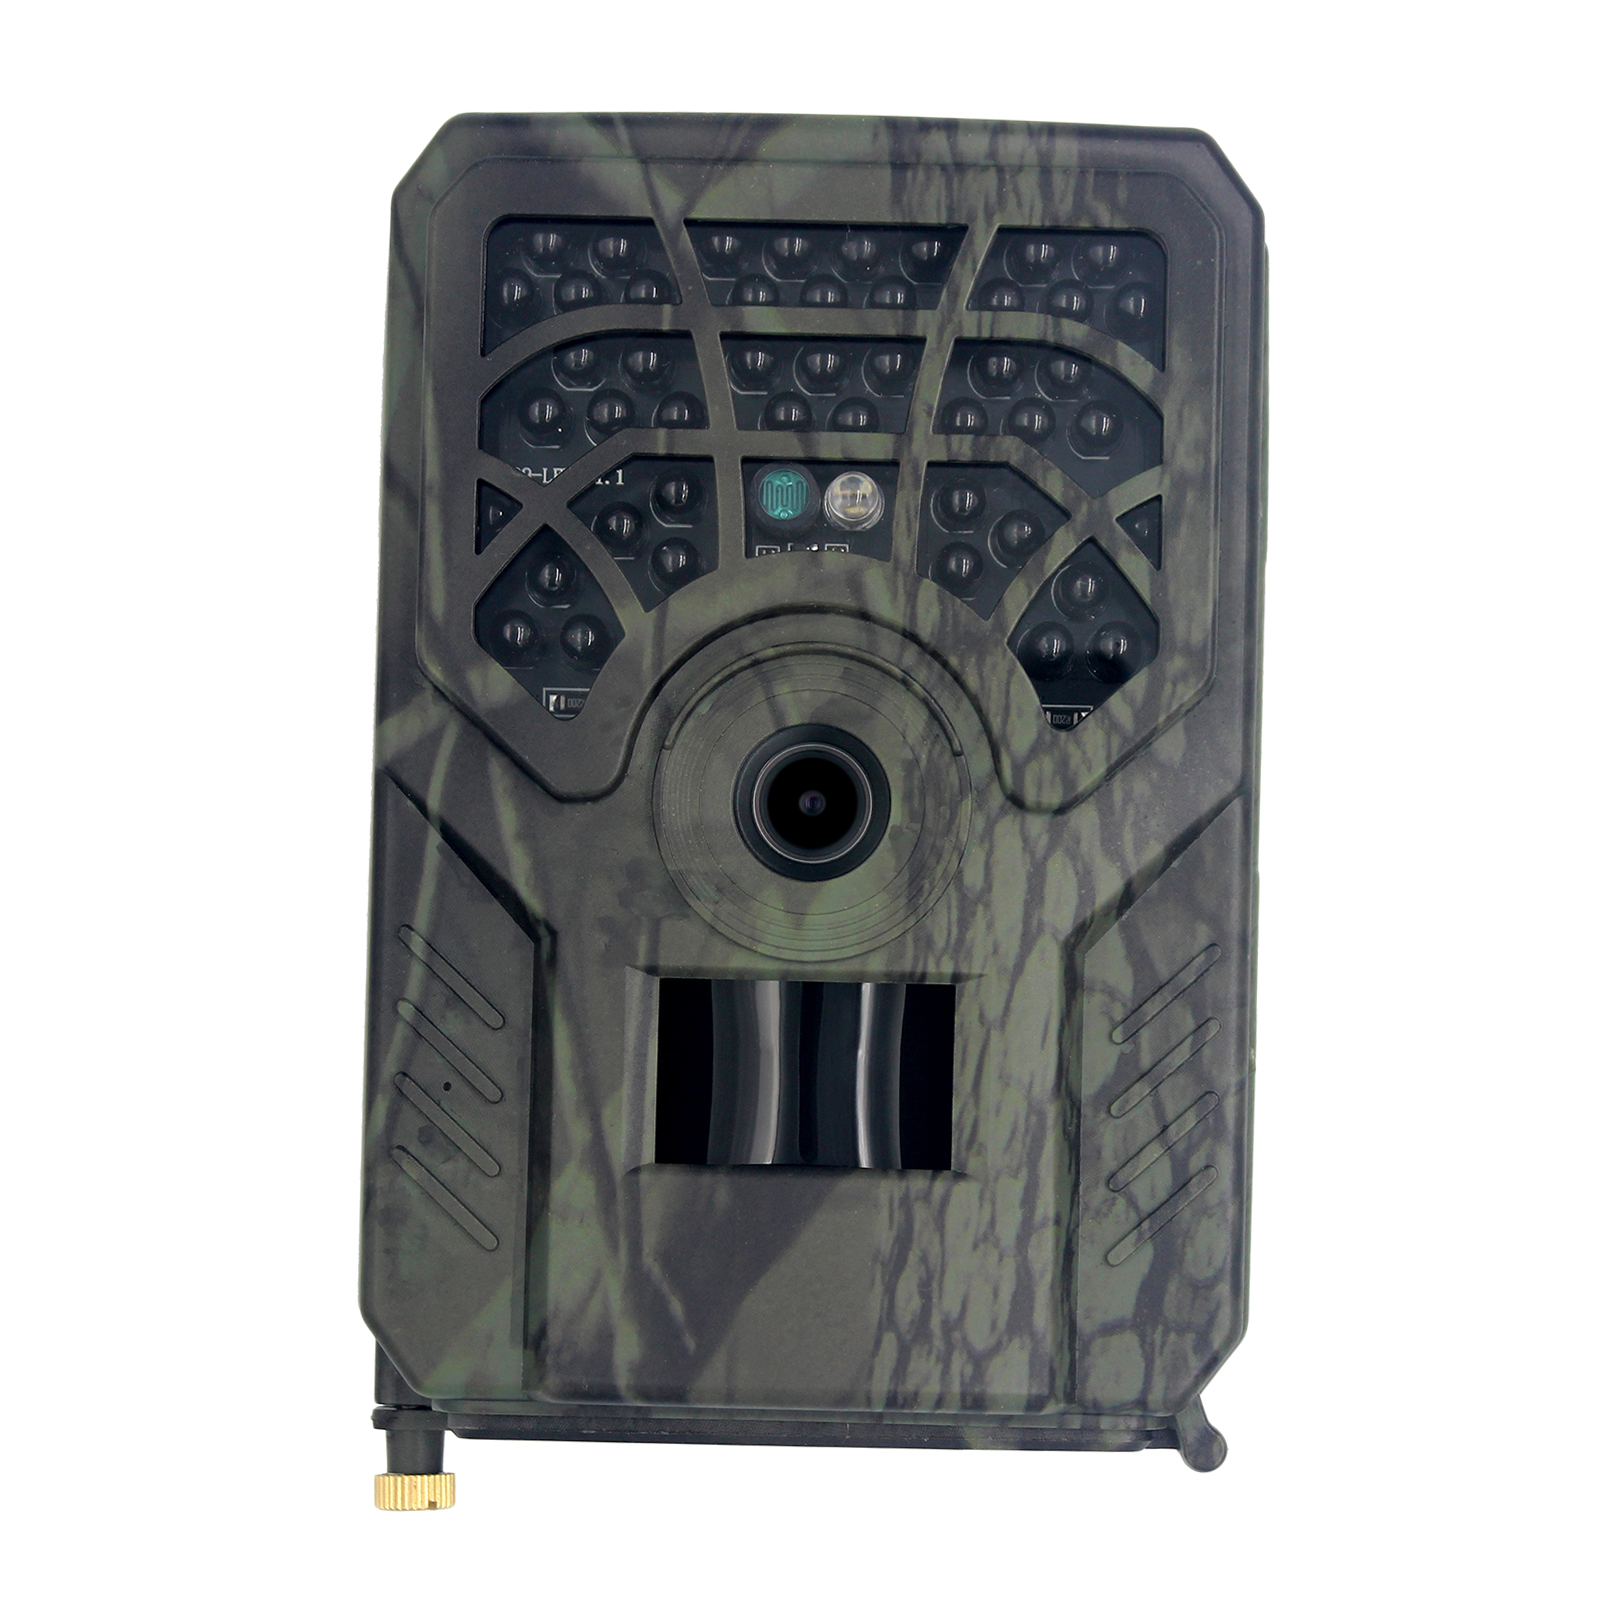 アップグレードPR-300Cトレイルカメラ720pナイトビジョン屋外狩猟セキュリティカムIP54防水野生生物120°広角レンズ小売ボックス